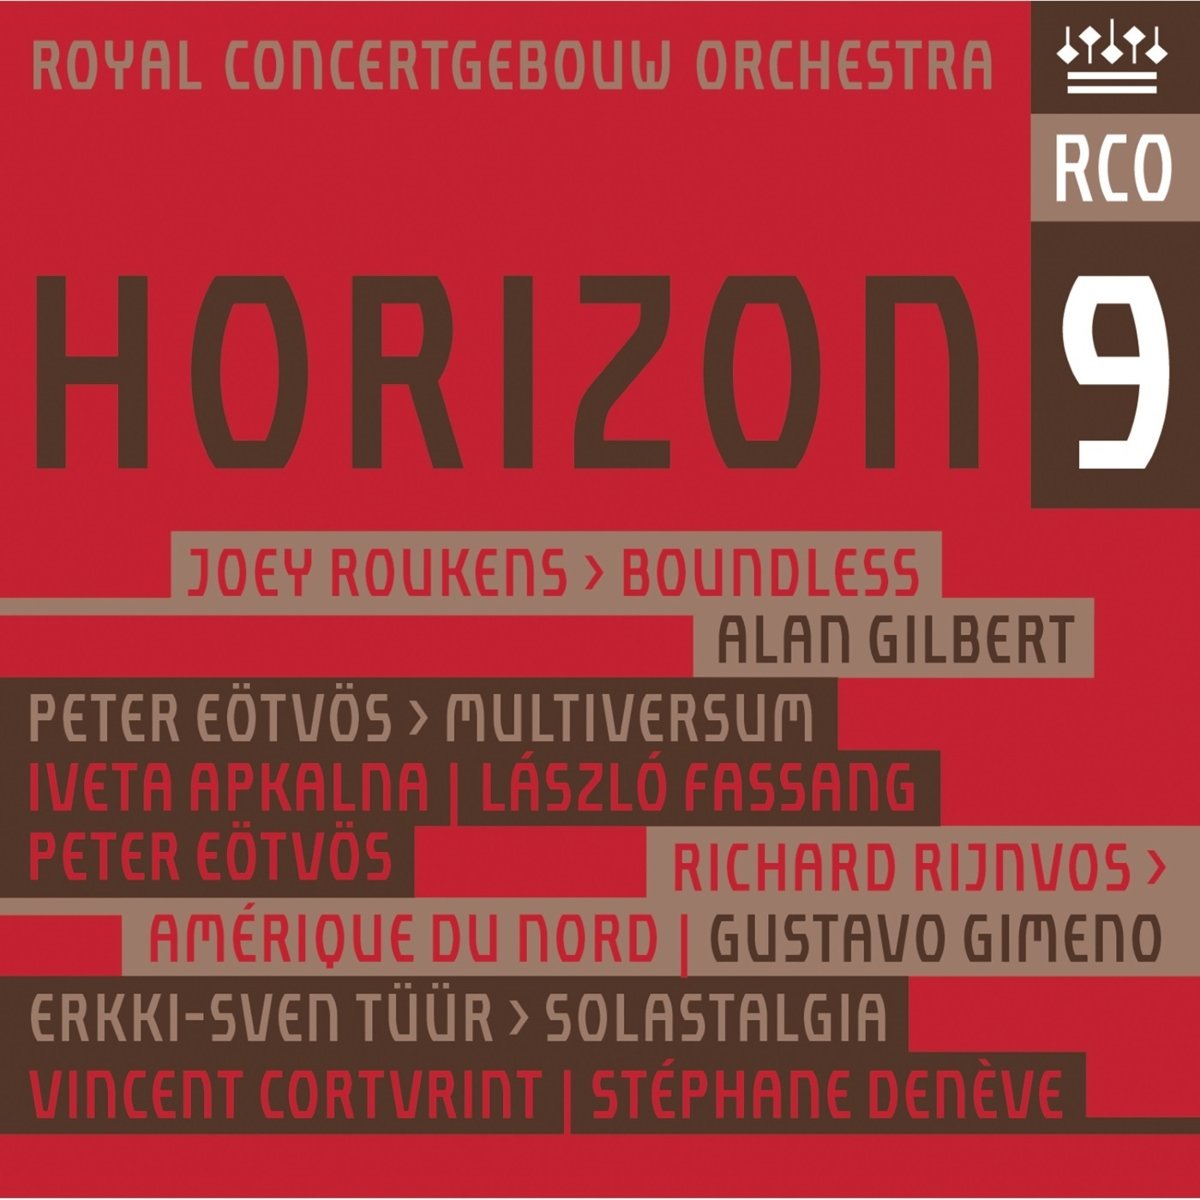 Royal Concertgebouw Orchestra - Horizon 9